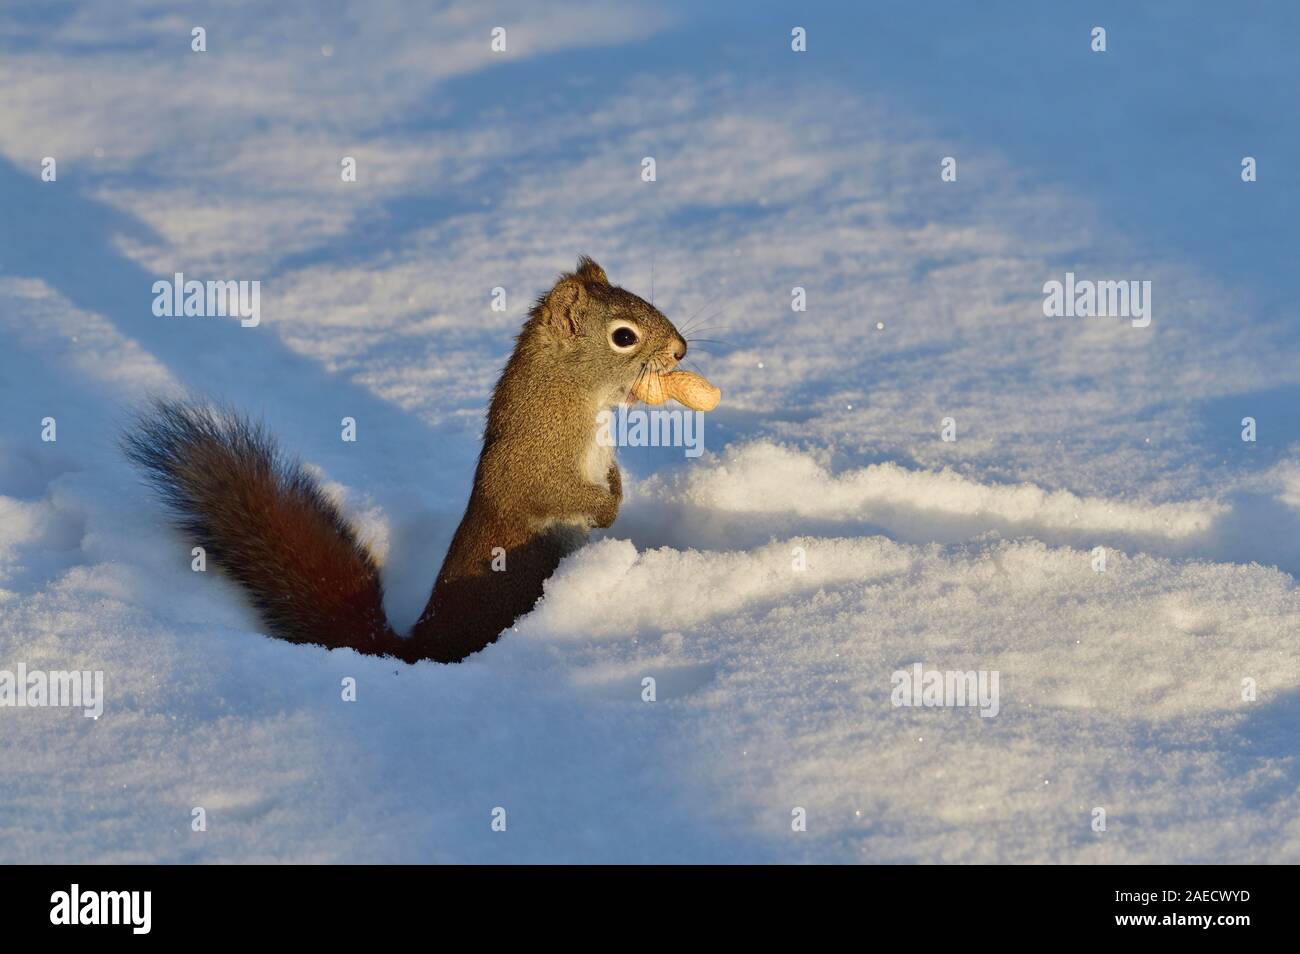 Un selvatico scoiattolo rosso 'Tamiasciurus hudsonicus', viaggiando attraverso la neve profonda con il suo premio di arachide che egli è in possesso nella sua bocca. Foto Stock